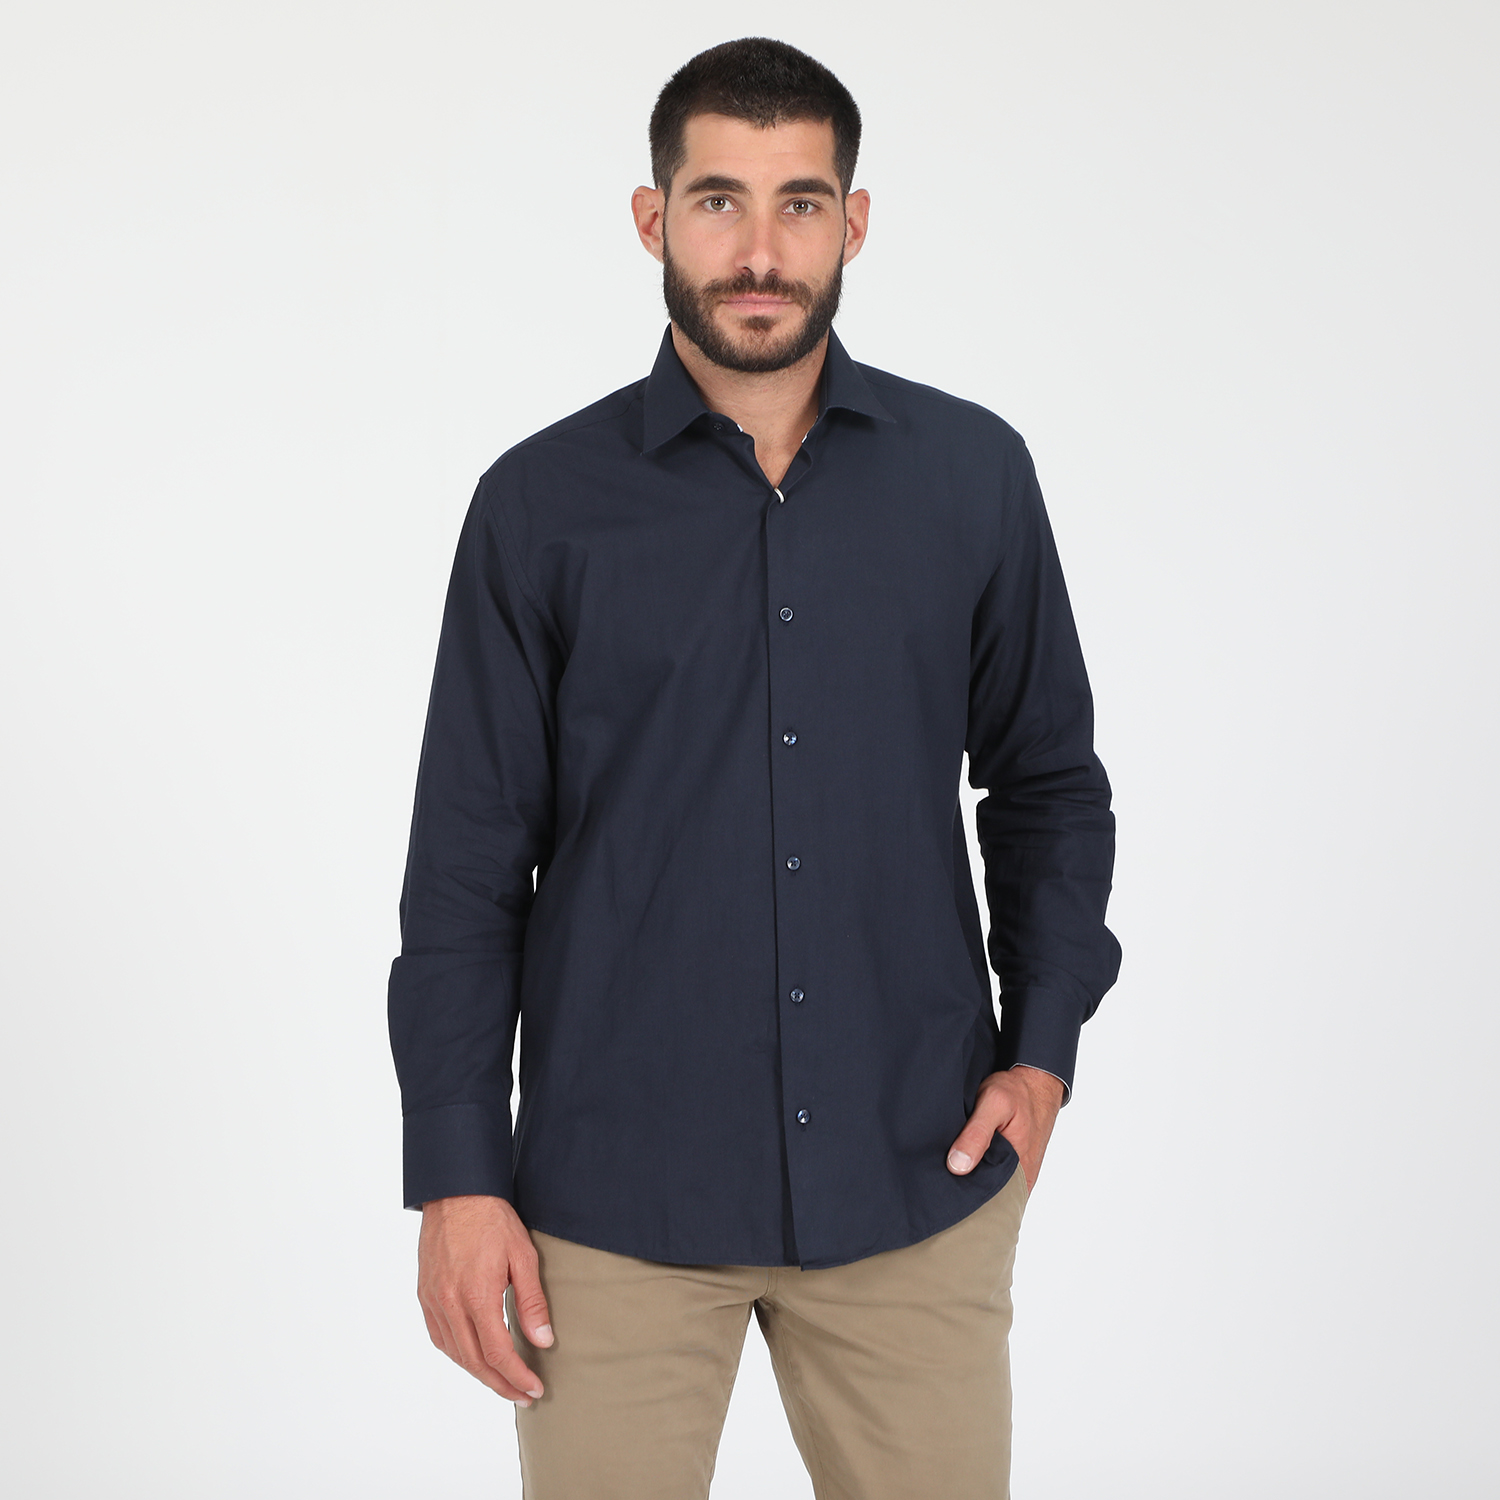 Ανδρικά/Ρούχα/Πουκάμισα/Μακρυμάνικα MARTIN & CO - Ανδρικό πουκάμισο MARTIN & CO REGULAR FIT μπλε